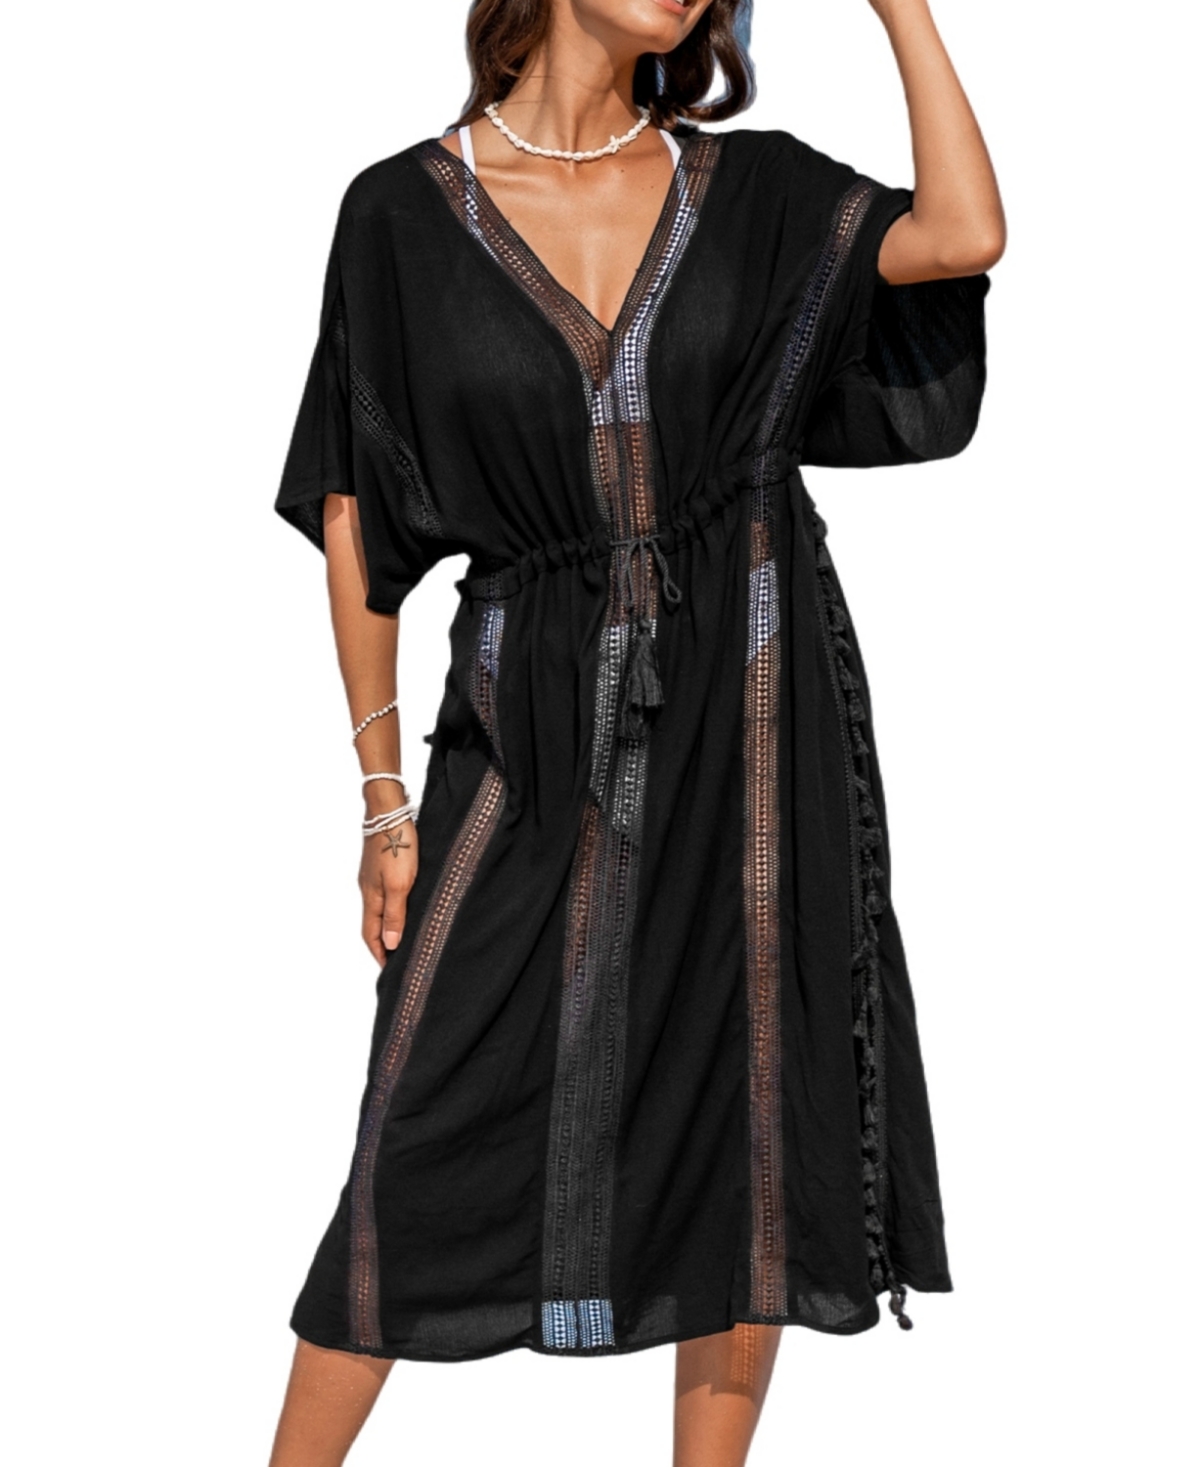 Women's Black Tassel Cover-Up Beach Dress - Black